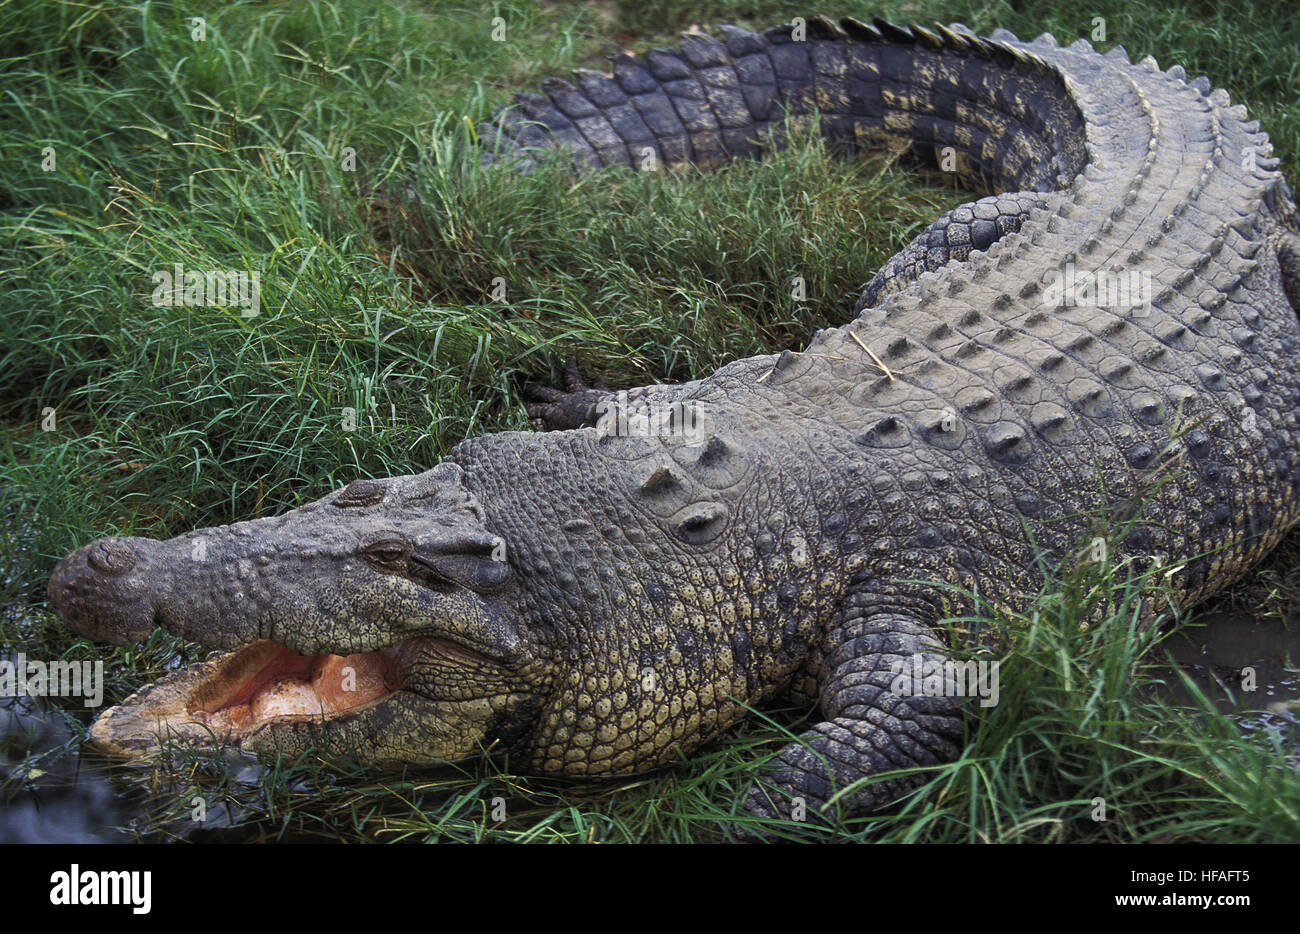 Cocodrilo de Mar o estuarios, cocodrilos Crocodylus porosus, Adulto con boca abierta regula la temperatura corporal, Australia Foto de stock